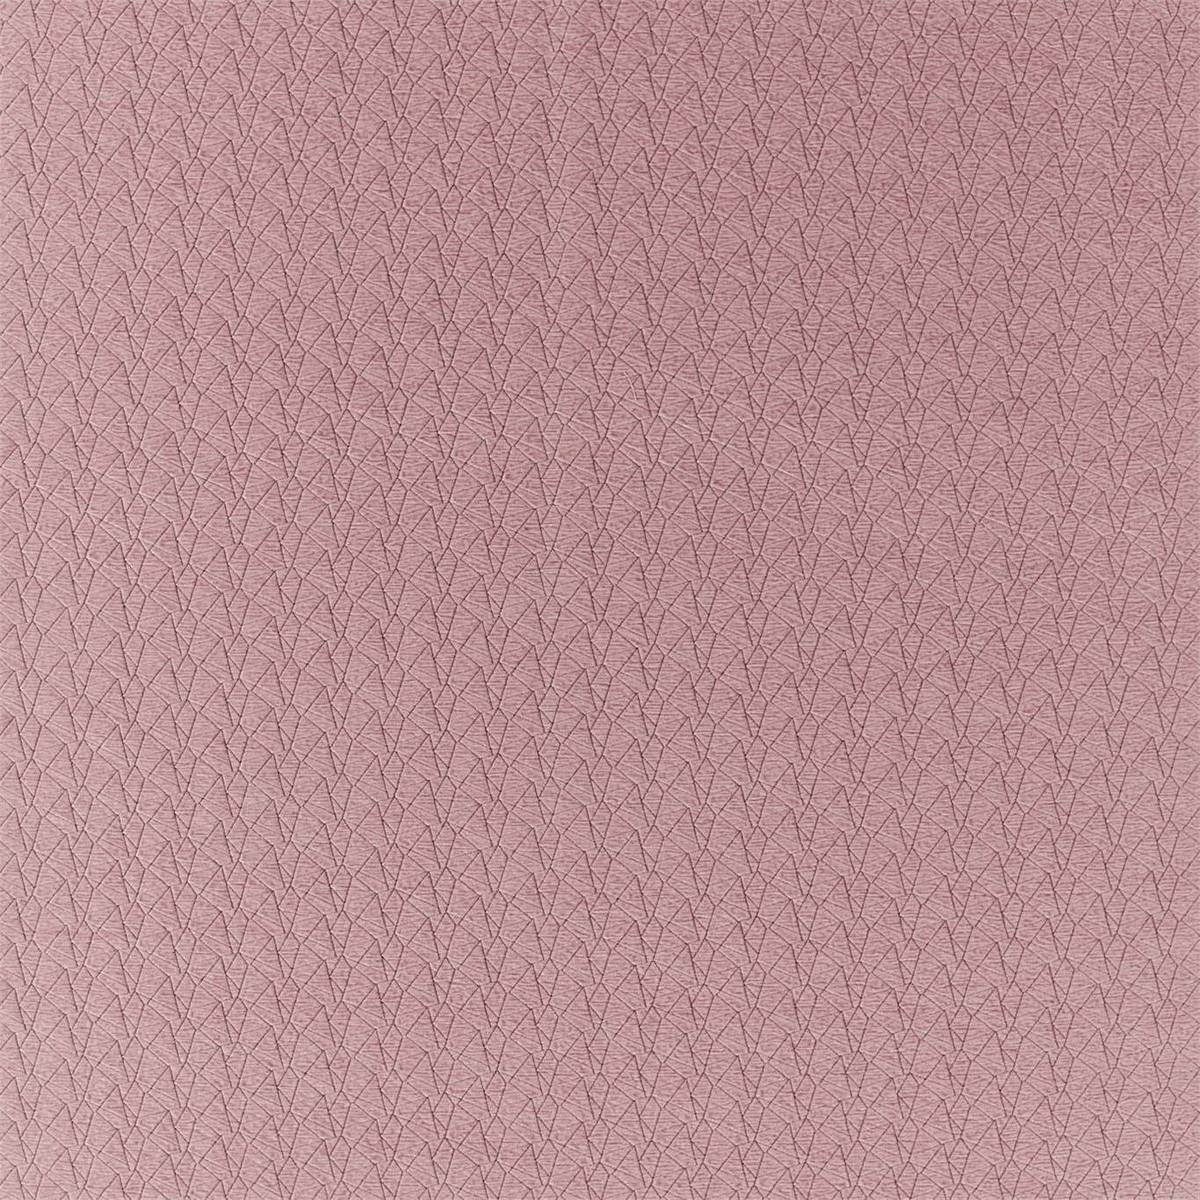 Tectrix Rose Quartz Fabric by Harlequin